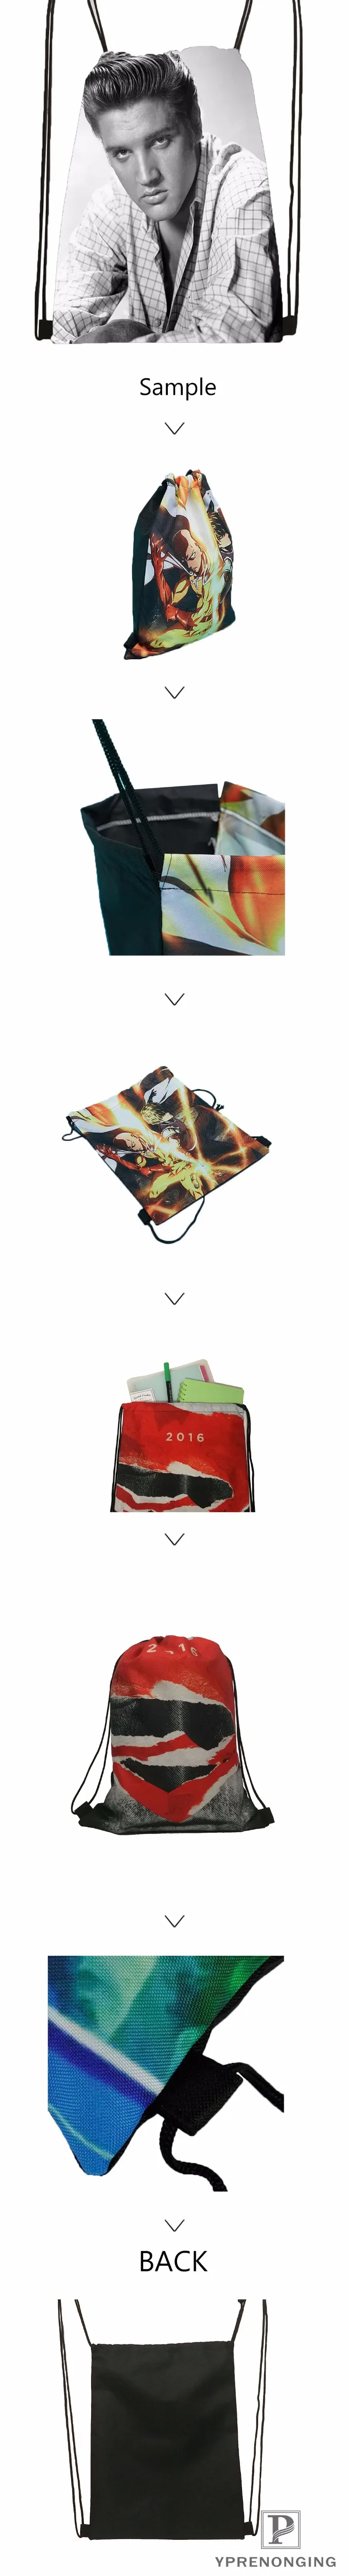 Custom reshiram-pokemon-@ 1 походная сумка на шнурке для мужчины женщины милый рюкзак дети ранец(черный Назад) 31x40 см#20180611-03-141